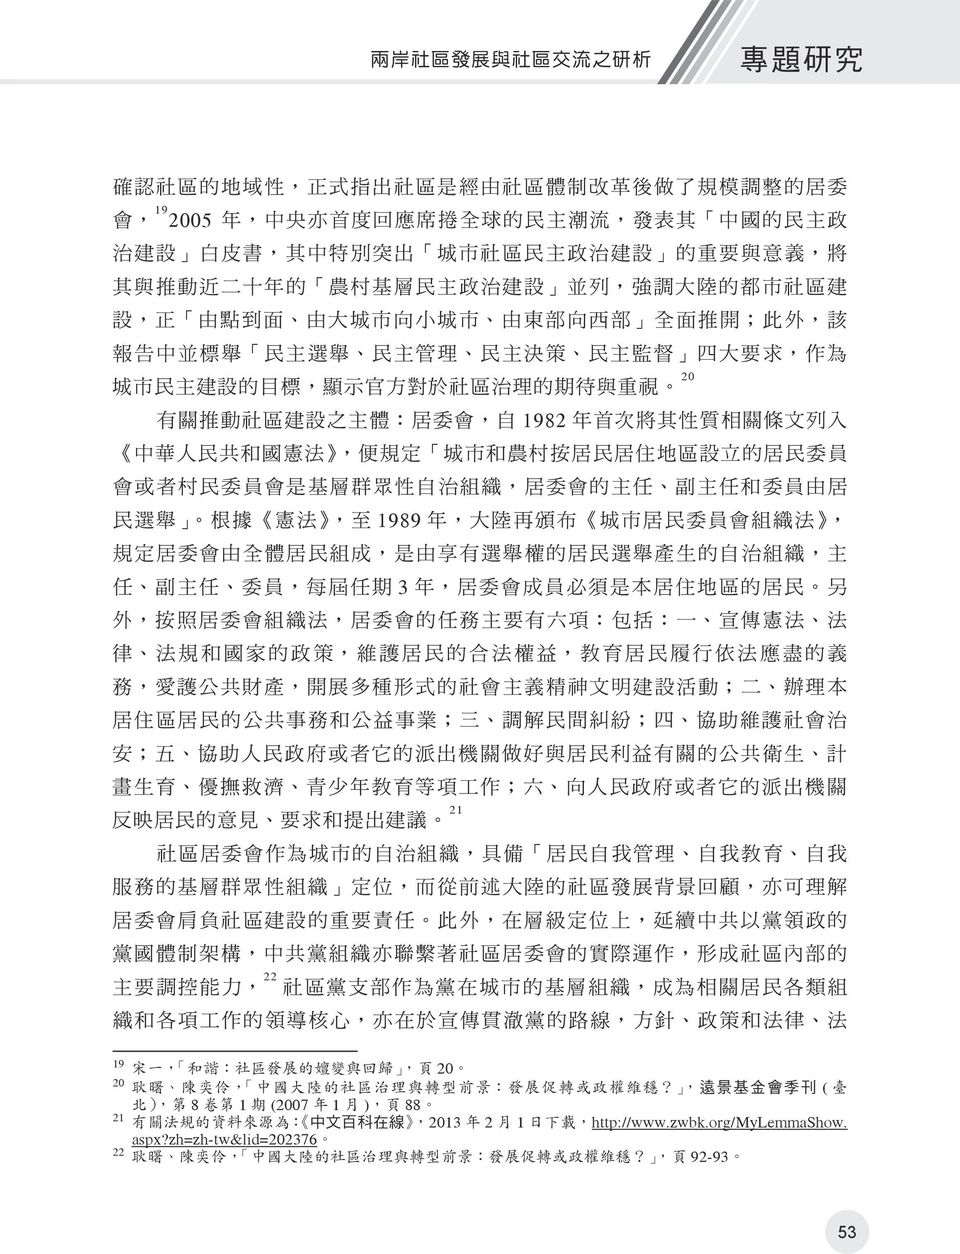 21 中文百科在線 2013 2 1 http://www.zwbk.